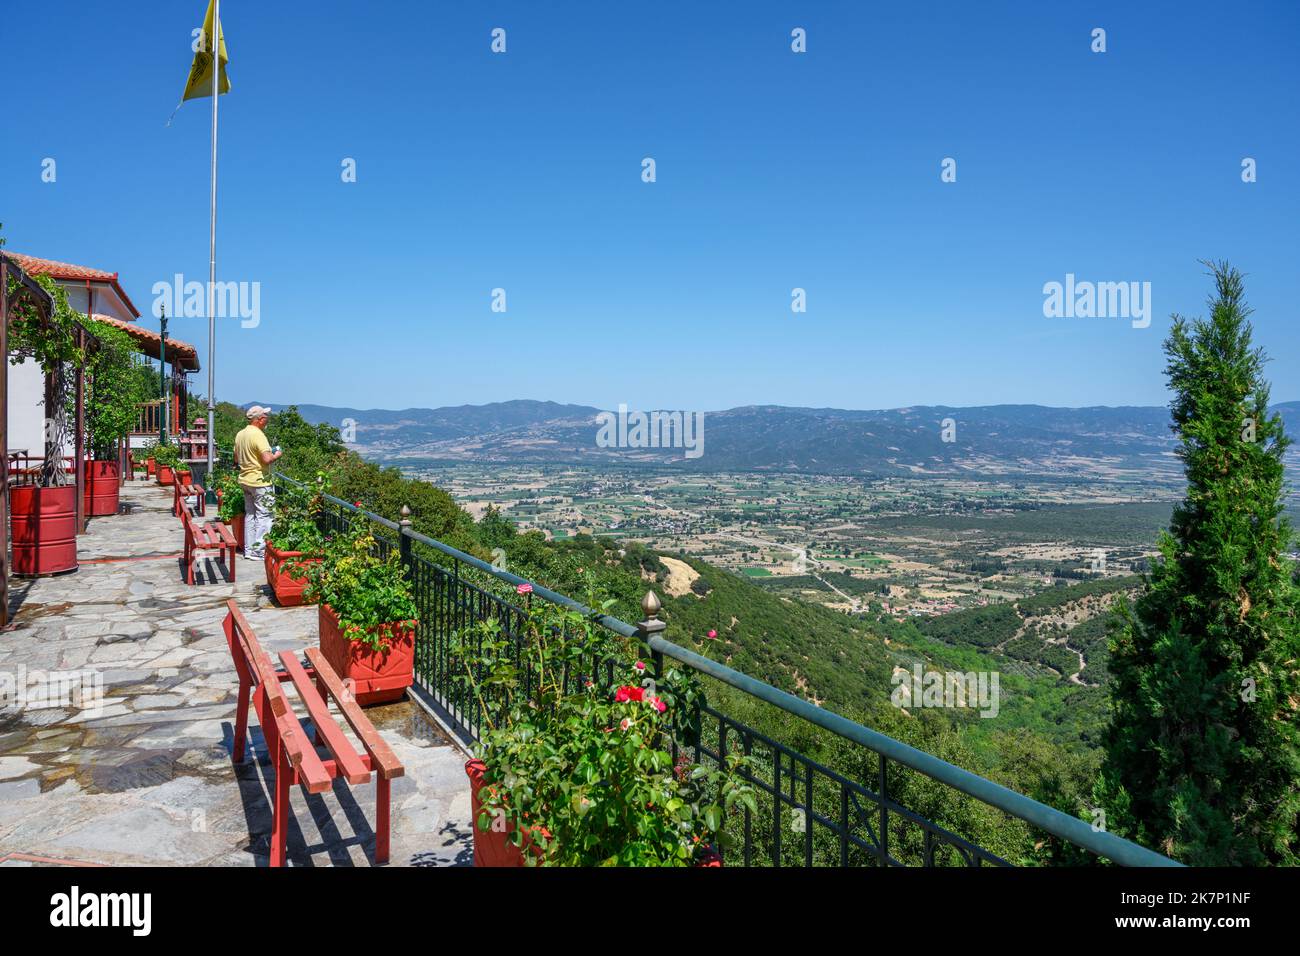 Vista dalla terrazza del monastero di Agathon (Agathonos), Parco Nazionale di Iti, Grecia centrale, Grecia Foto Stock